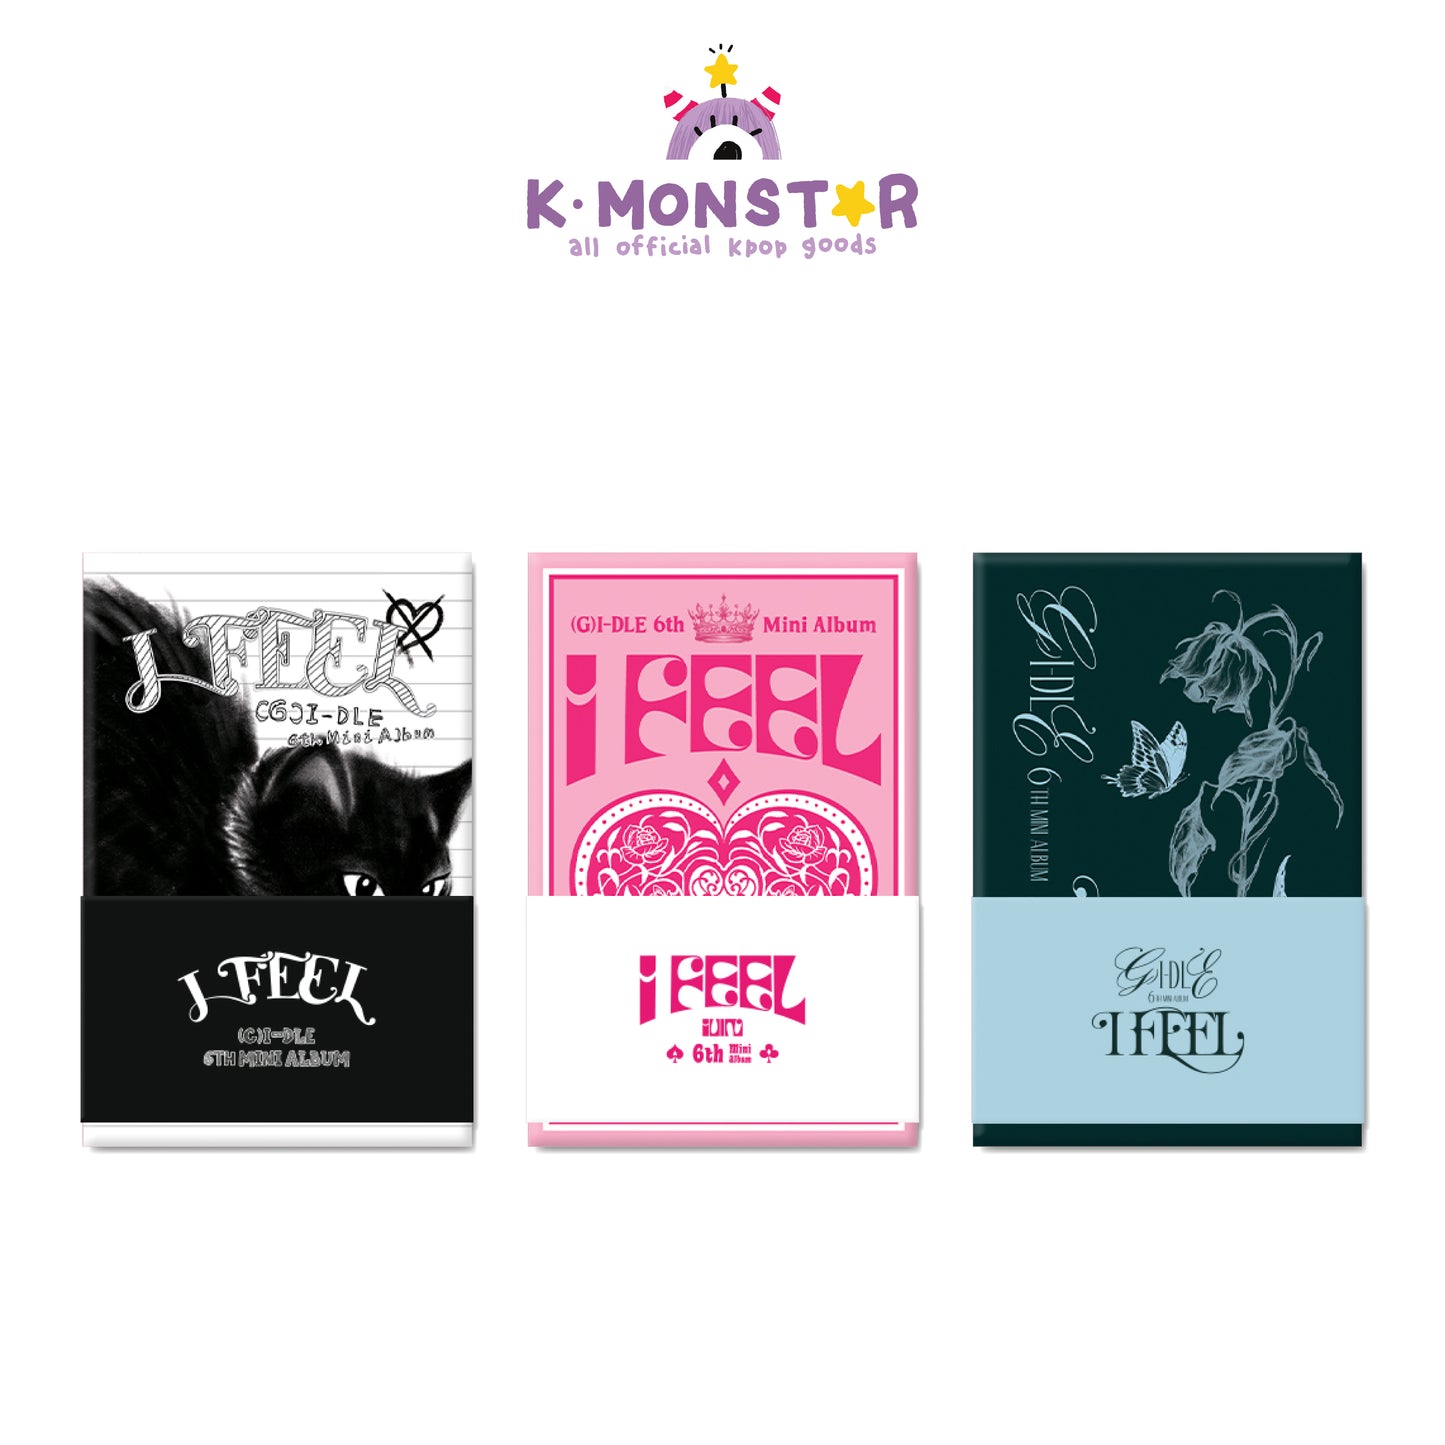 G)I-DLE Albums – K Stars